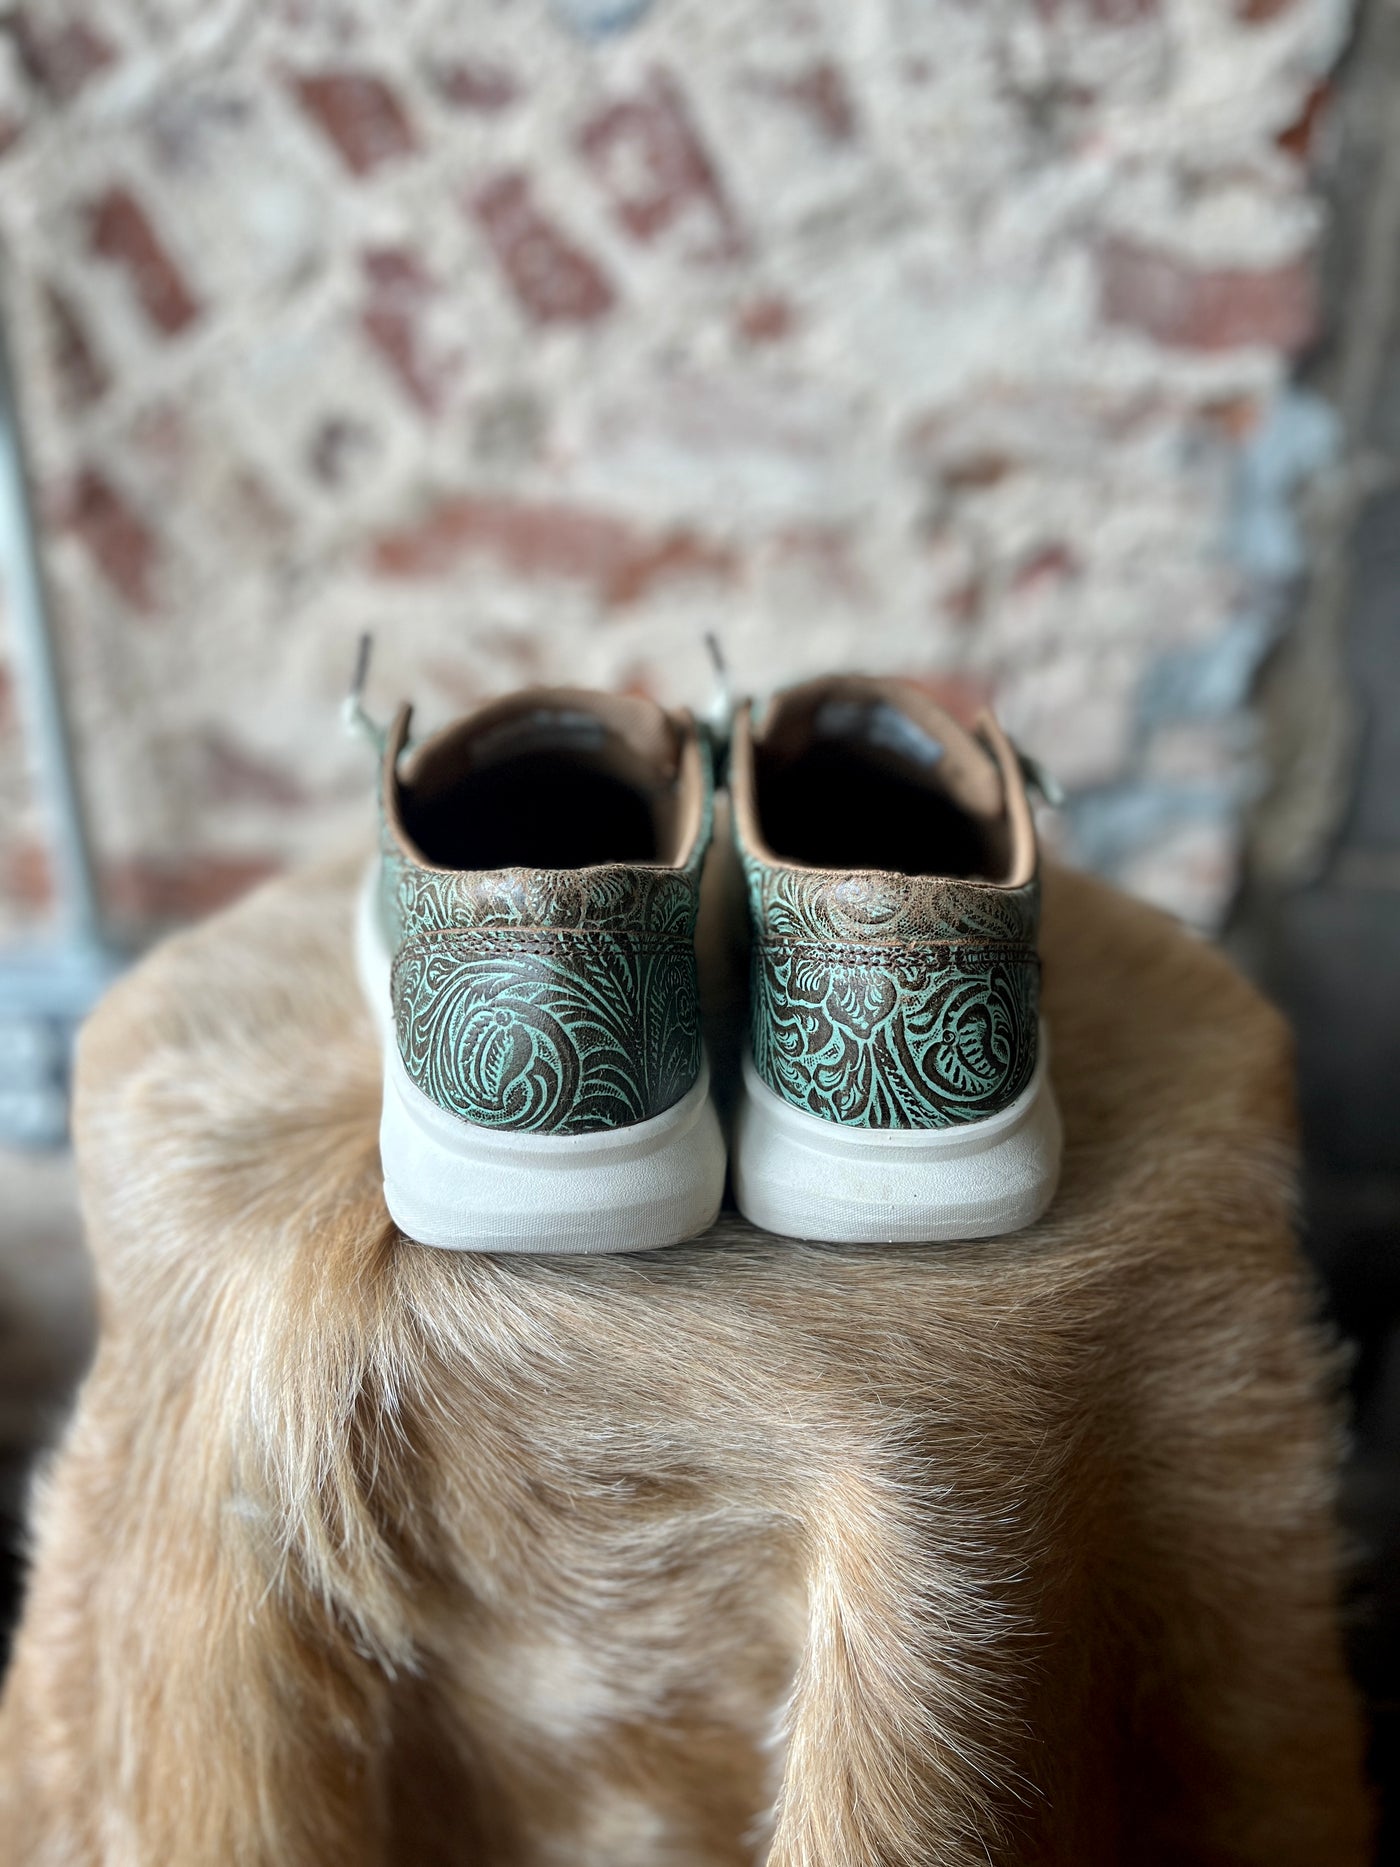 Size 8.5 Ariat Hilo Shoe ✜FINAL SALE✜ CS034